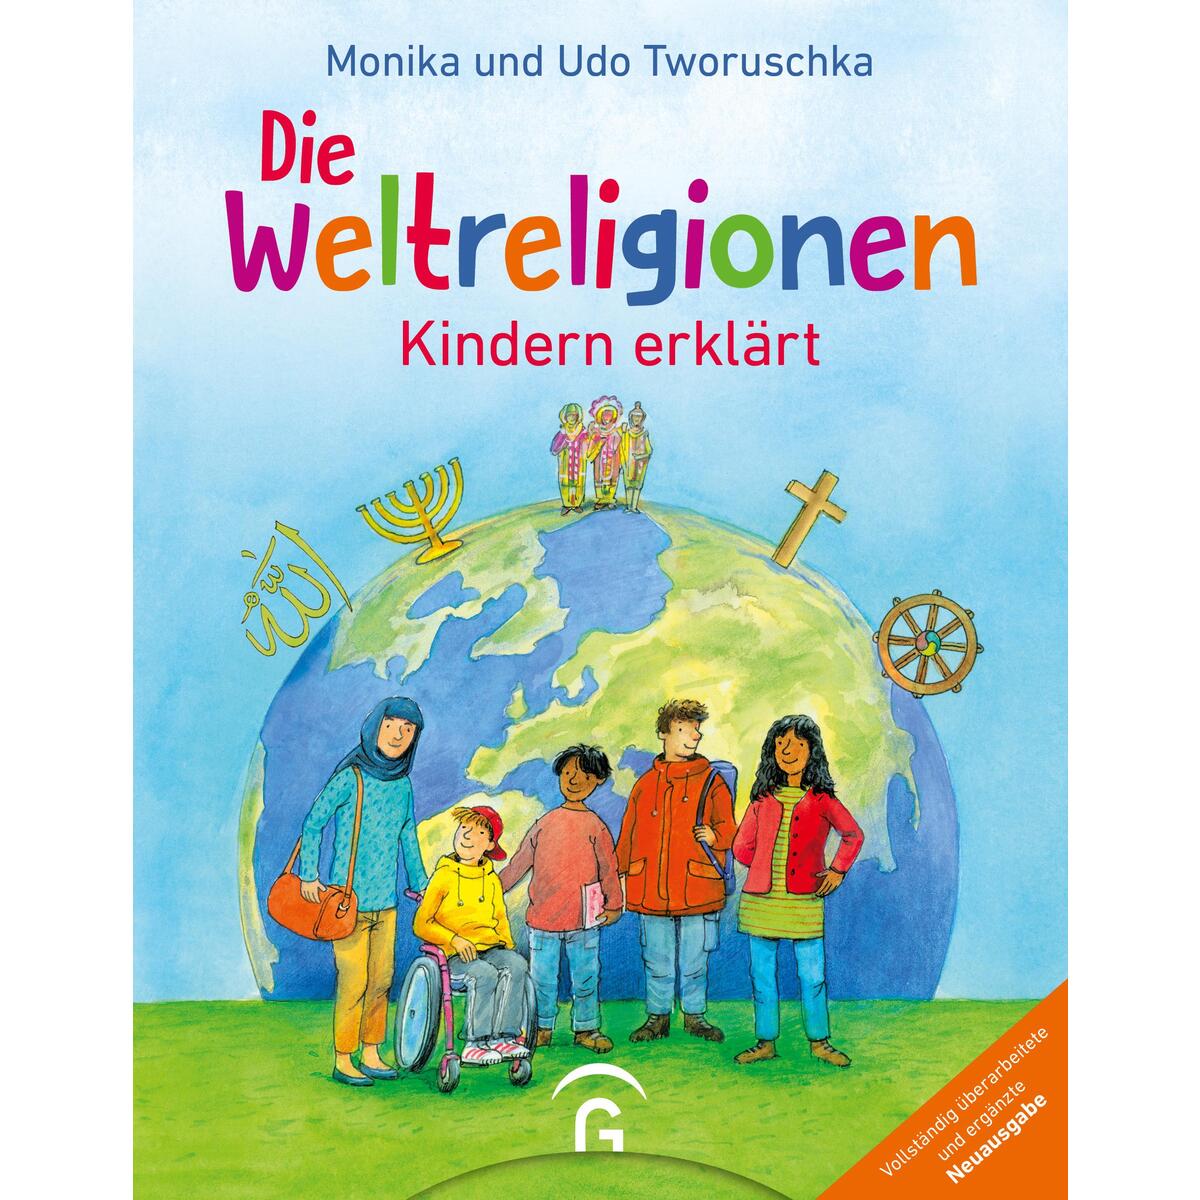 Die Weltreligionen - Kindern erklärt von Guetersloher Verlagshaus